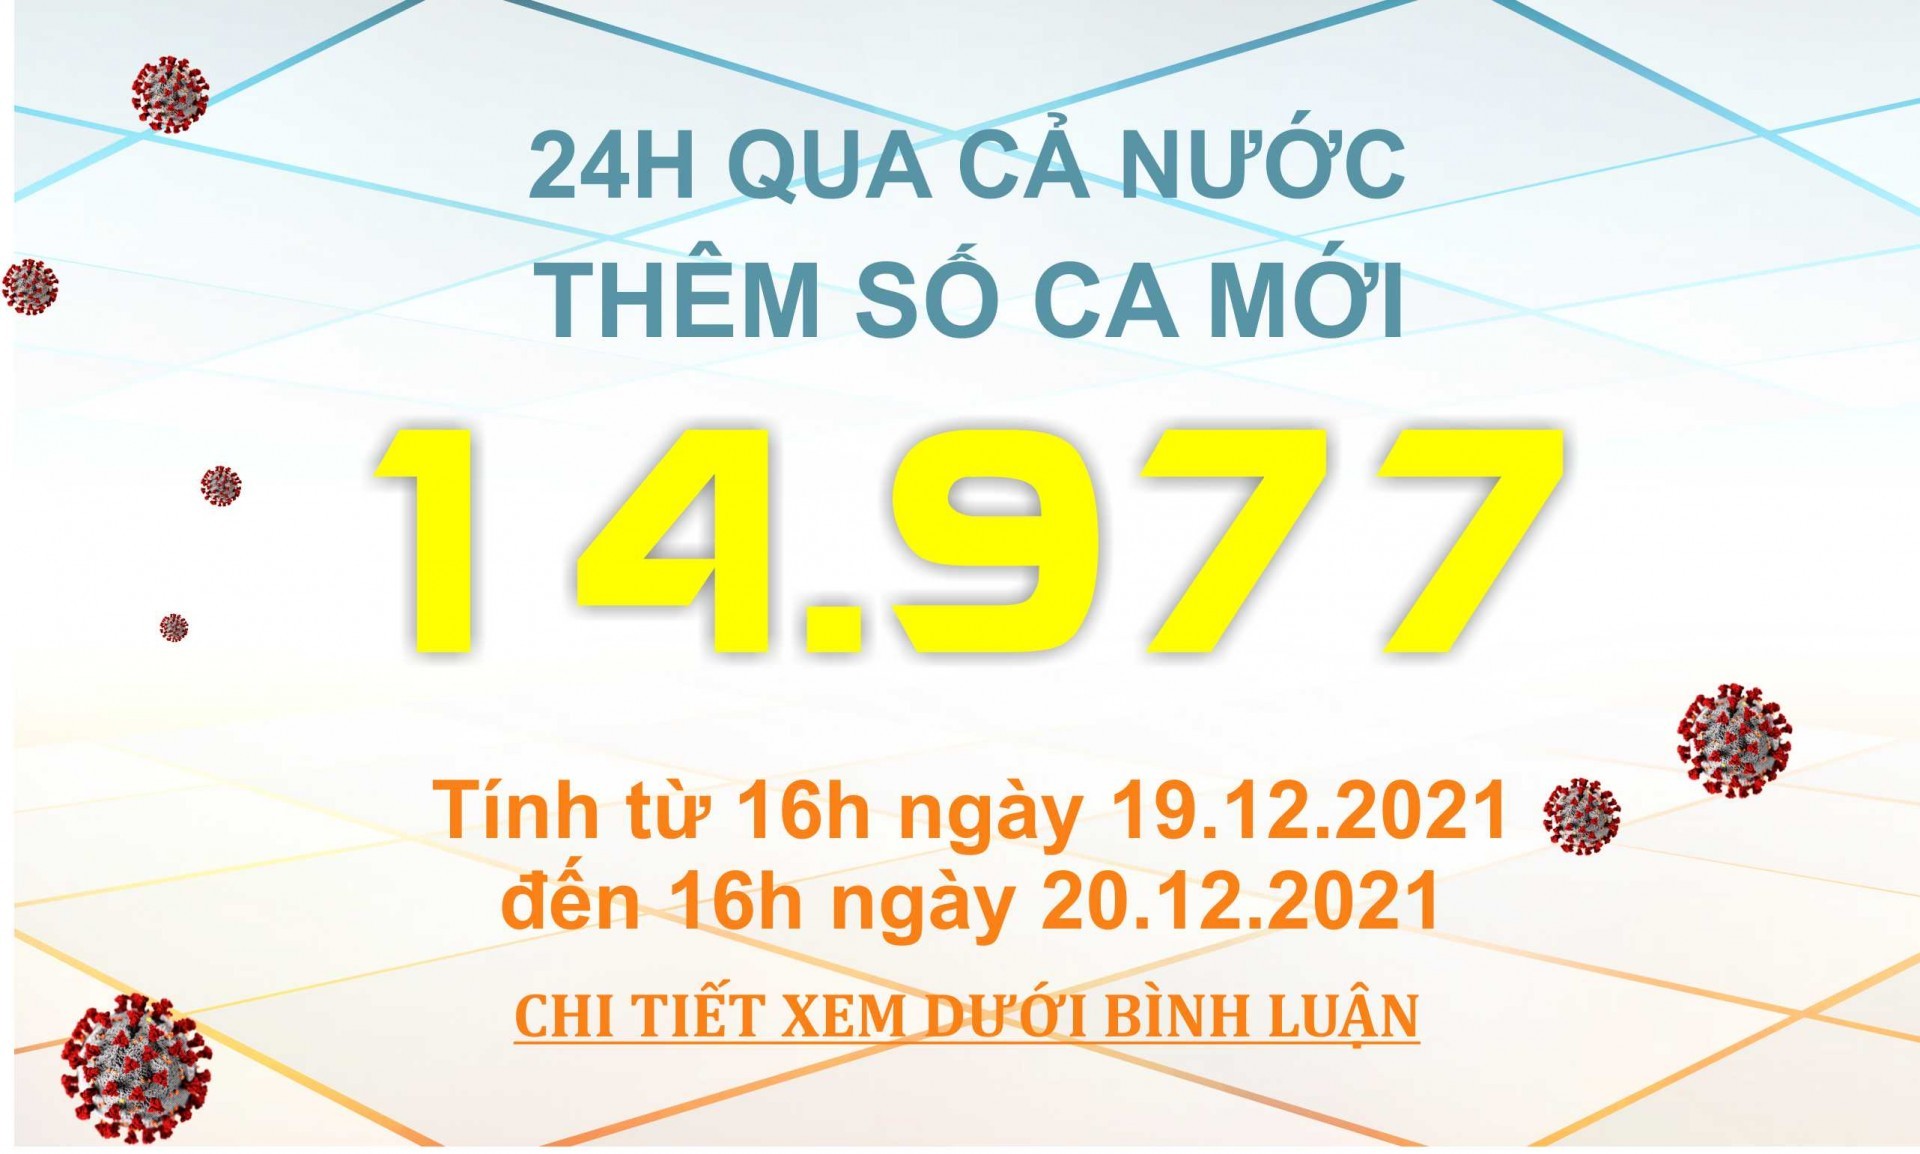 Ngày 20/12: Có 14.977 ca COVID-19, Hà Nội tiếp tục có số mắc cao nhất cả nước với 1.612 ca